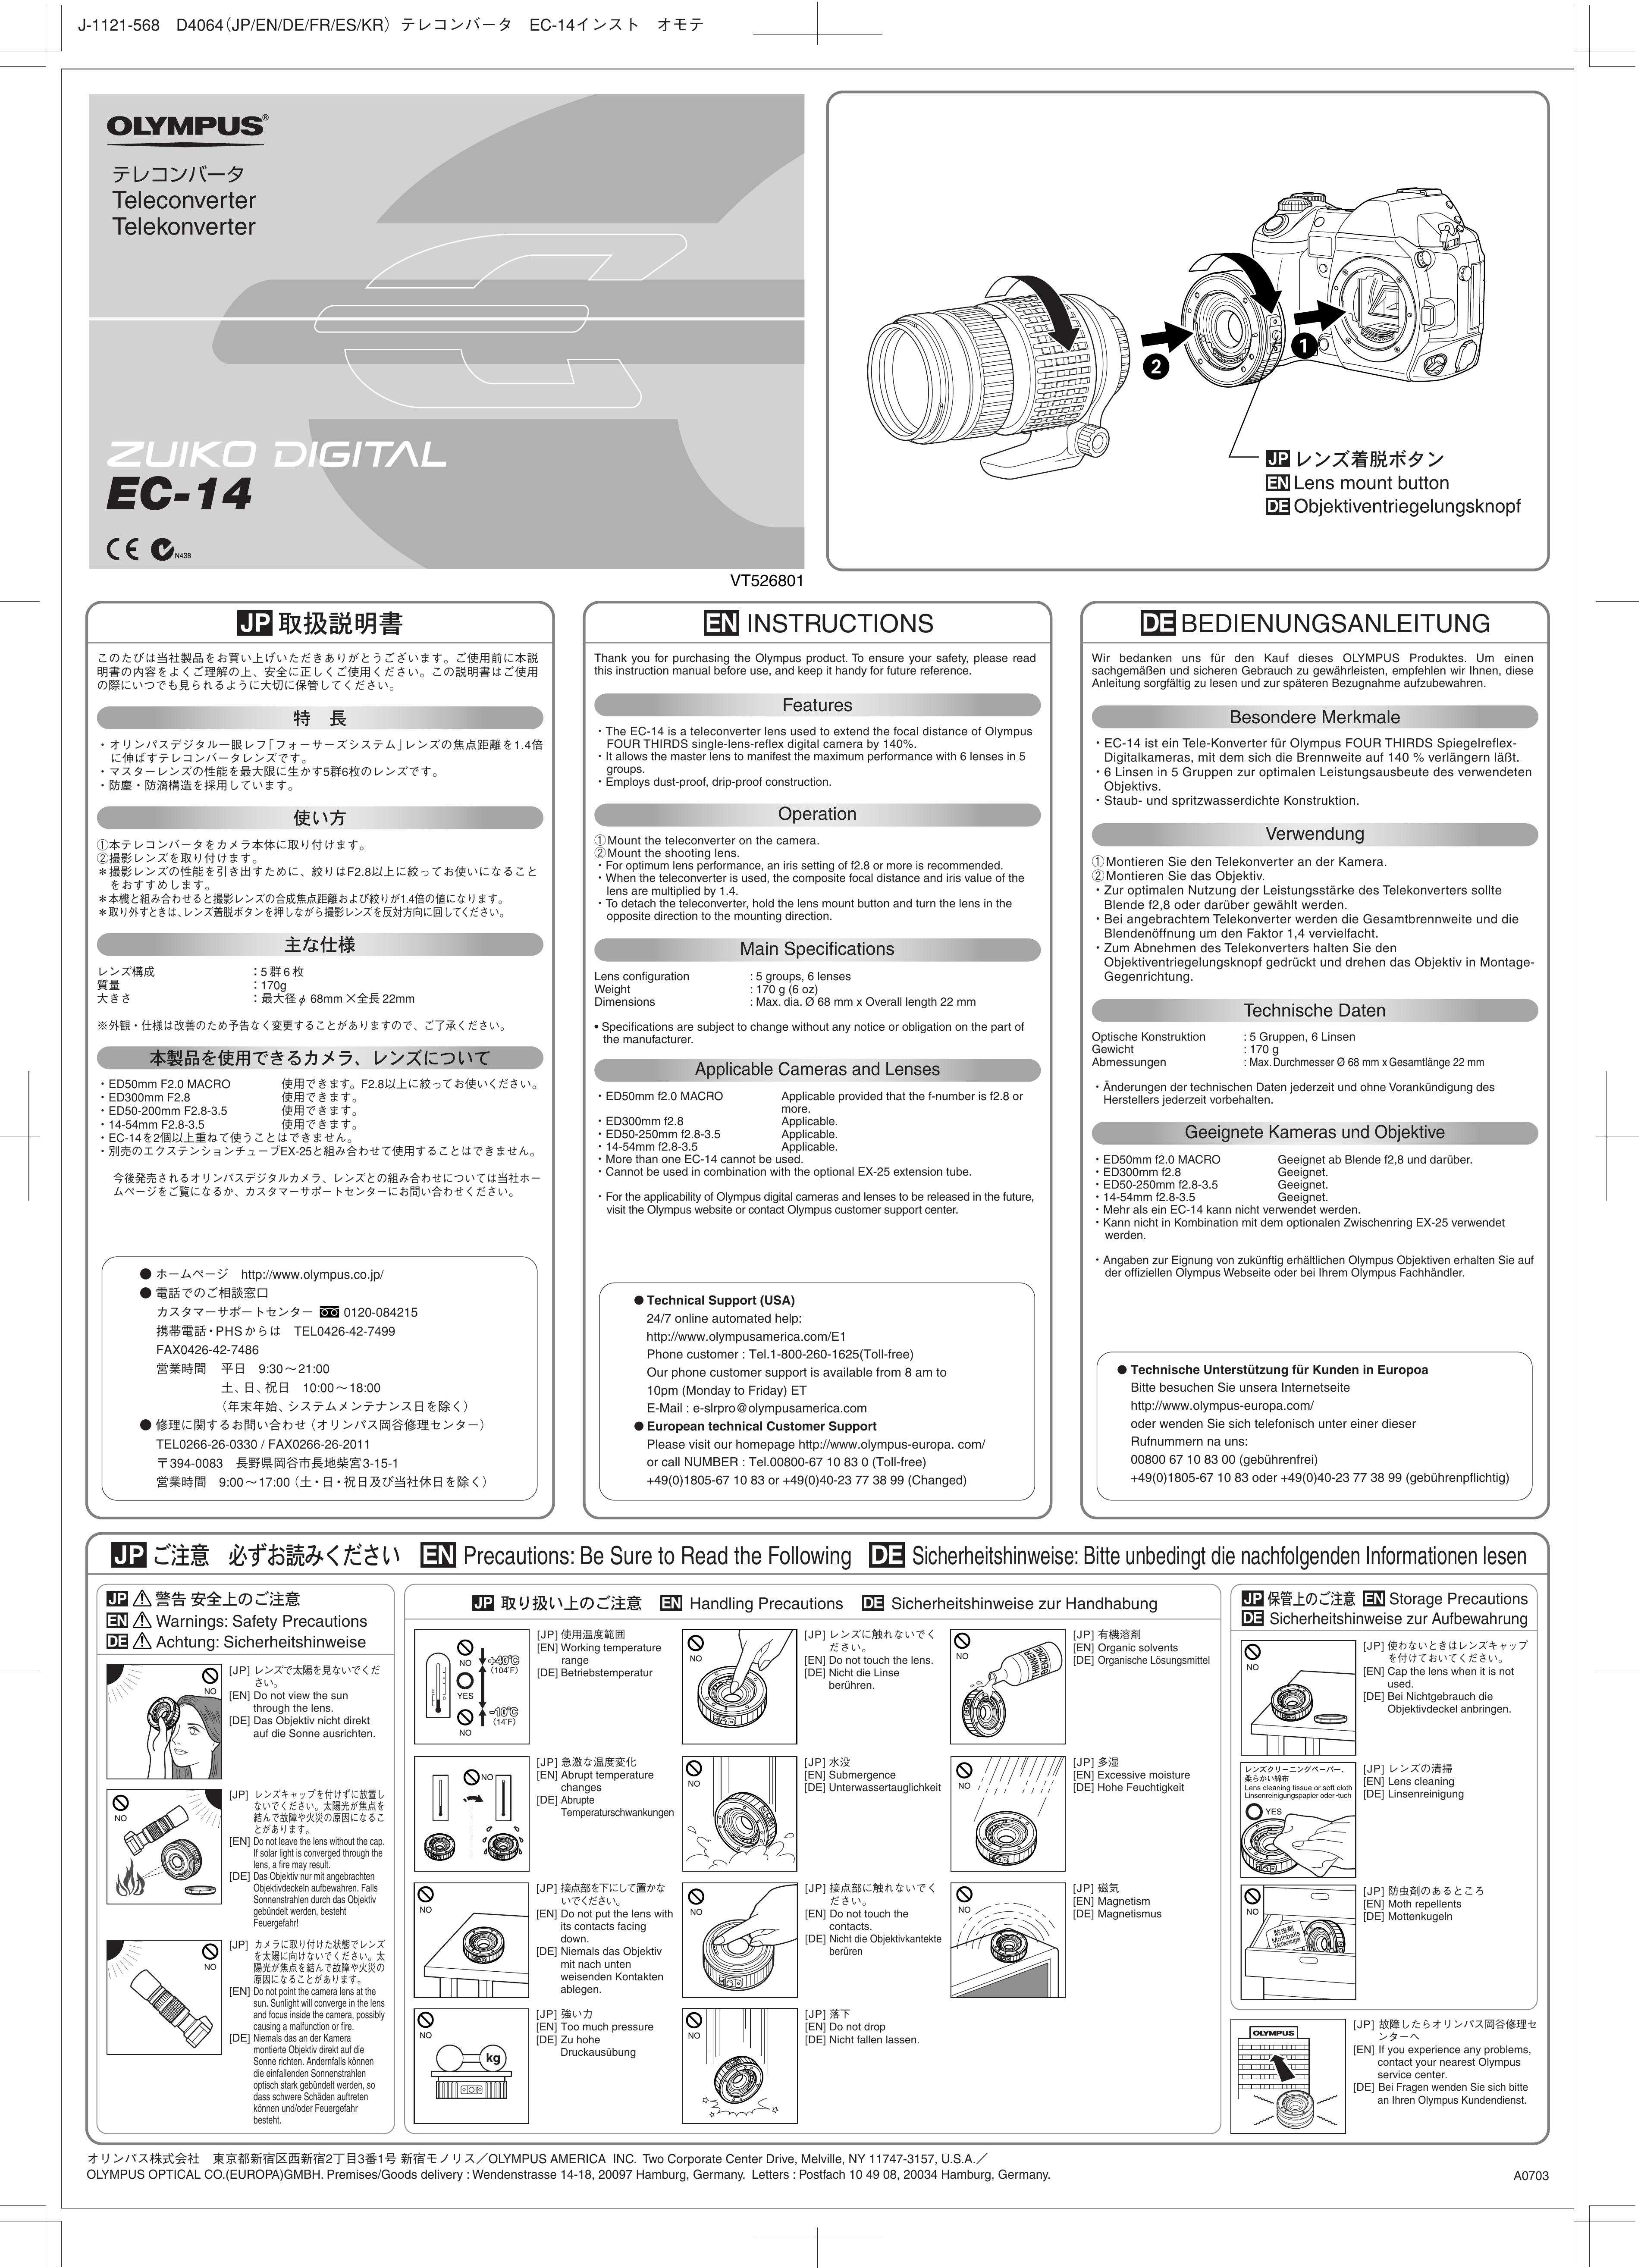 Olympus EC-14 Camera Lens User Manual